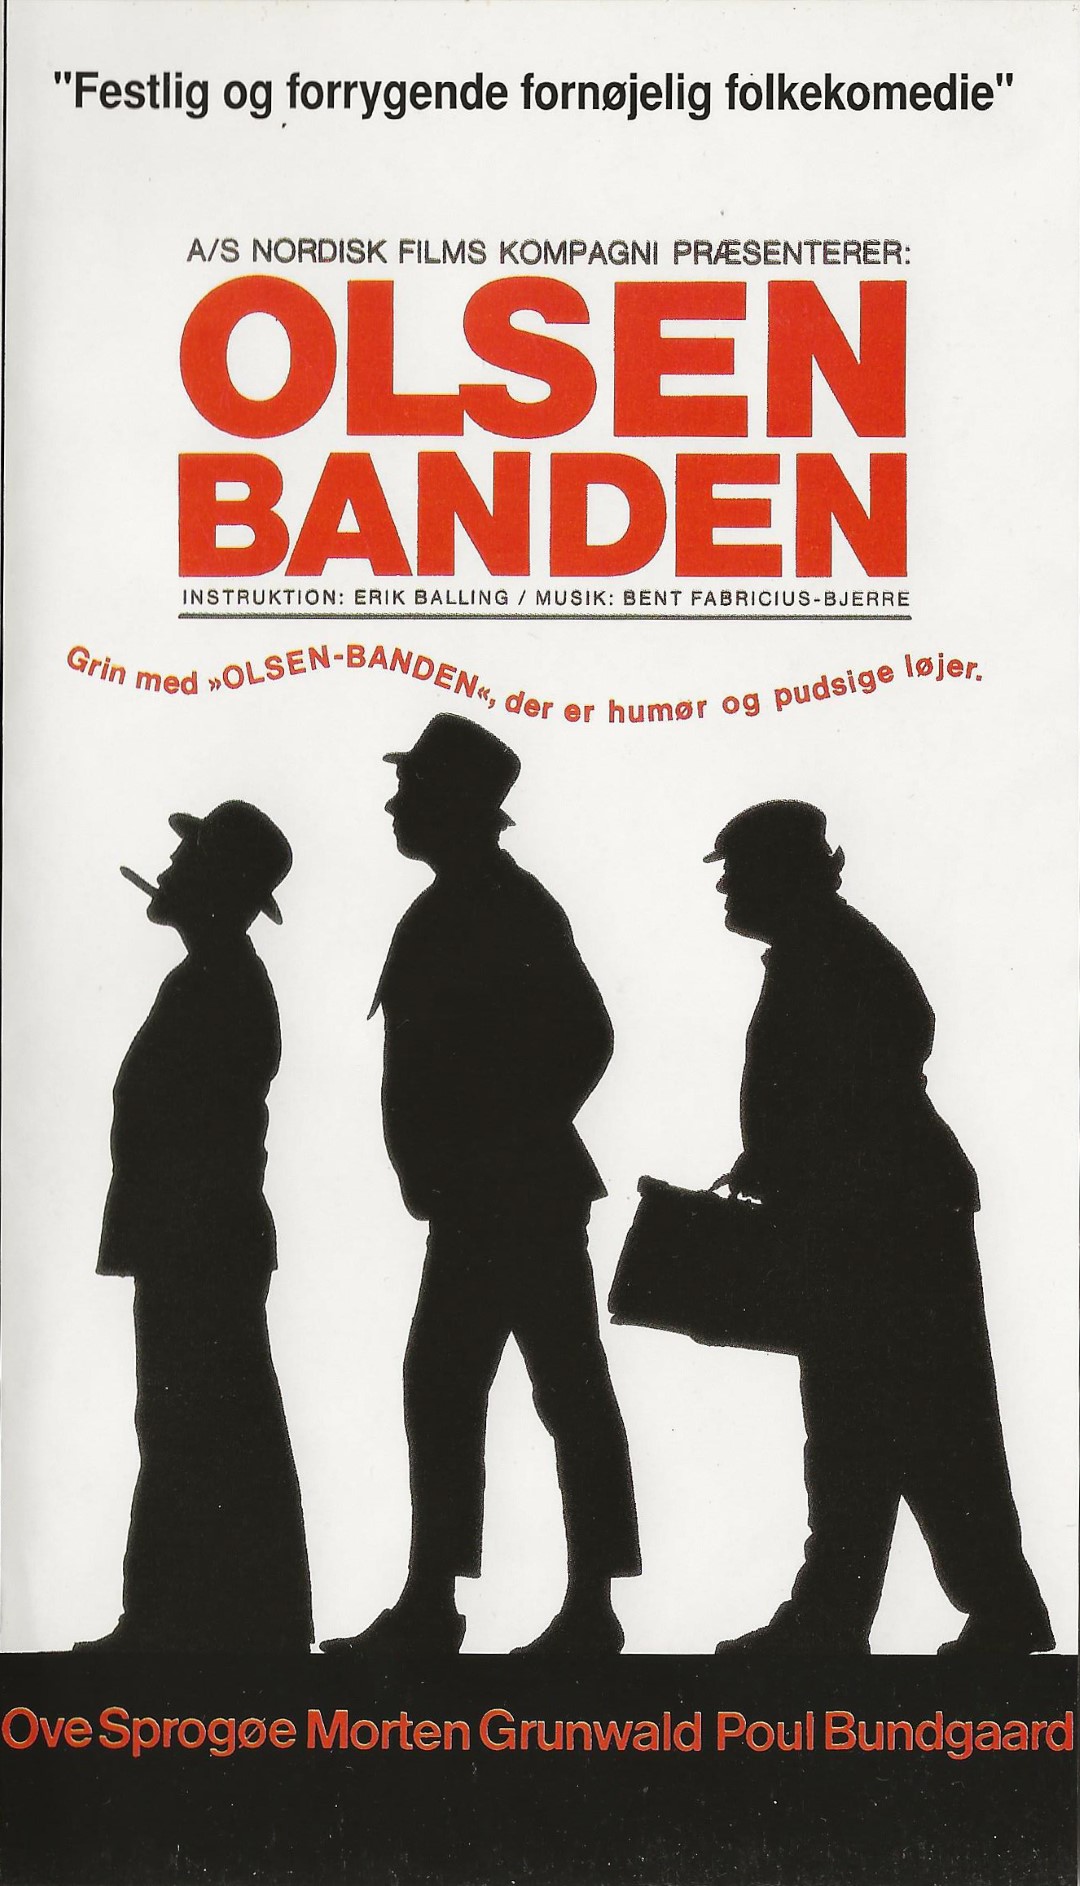 Olsen Banden  VHS Nordisk Film 1994